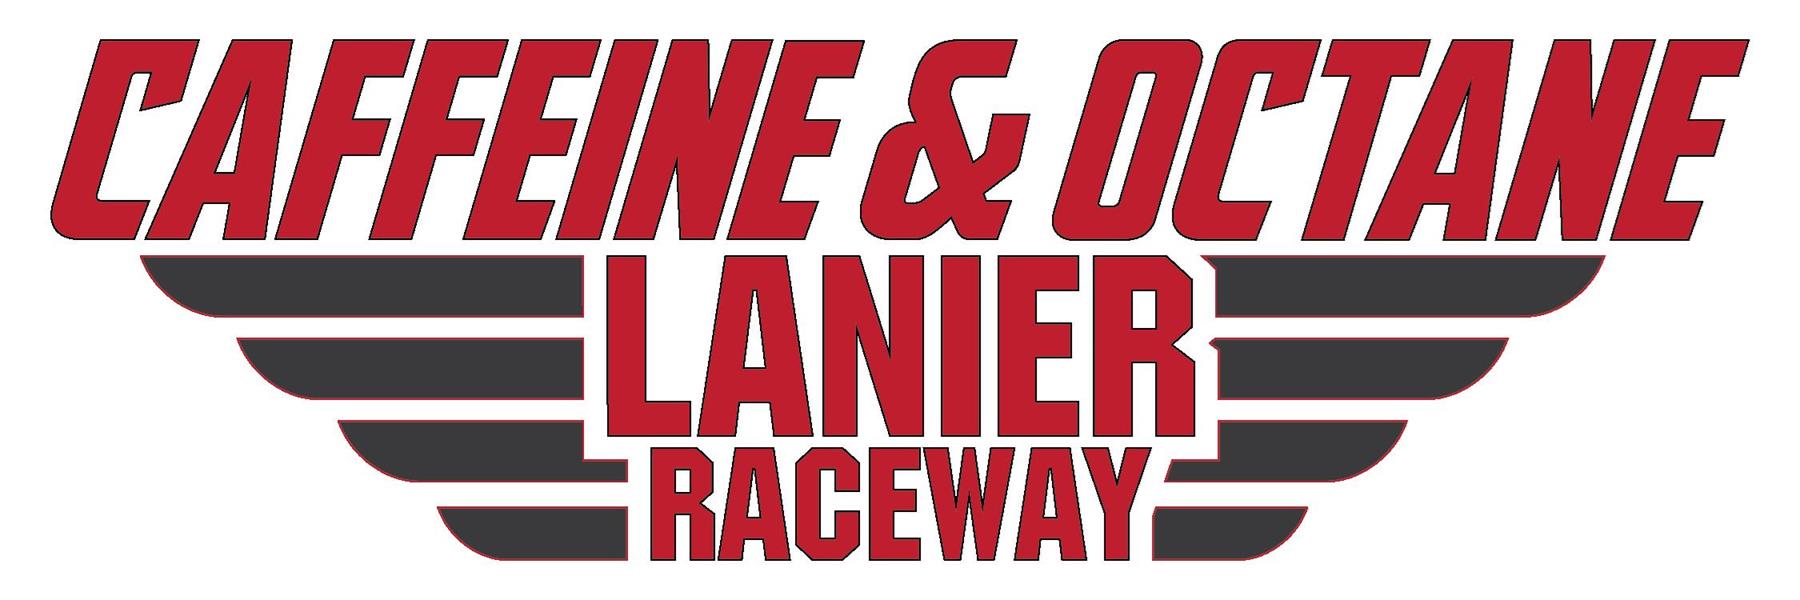 4/10/2010 - Caffeine and Octane's Lanier Raceway